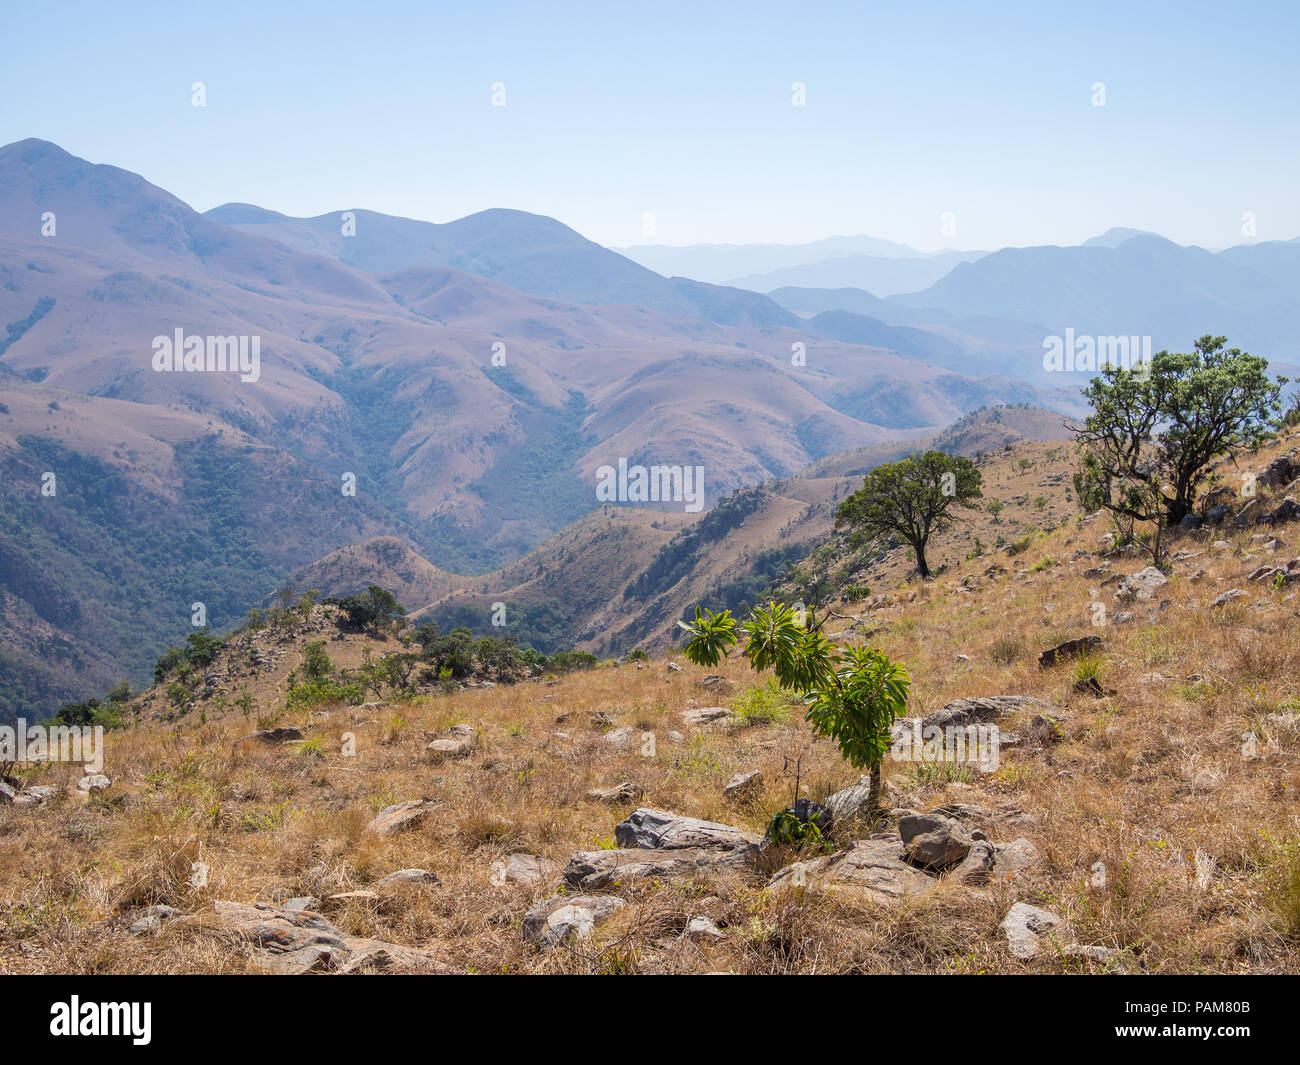 Vue panoramique sur les montagnes et le paysage sec de Malolotja Nature Reserve, au Swaziland, en Afrique australe. Malolotja Nature Reserve est l'un des plus impres Banque D'Images